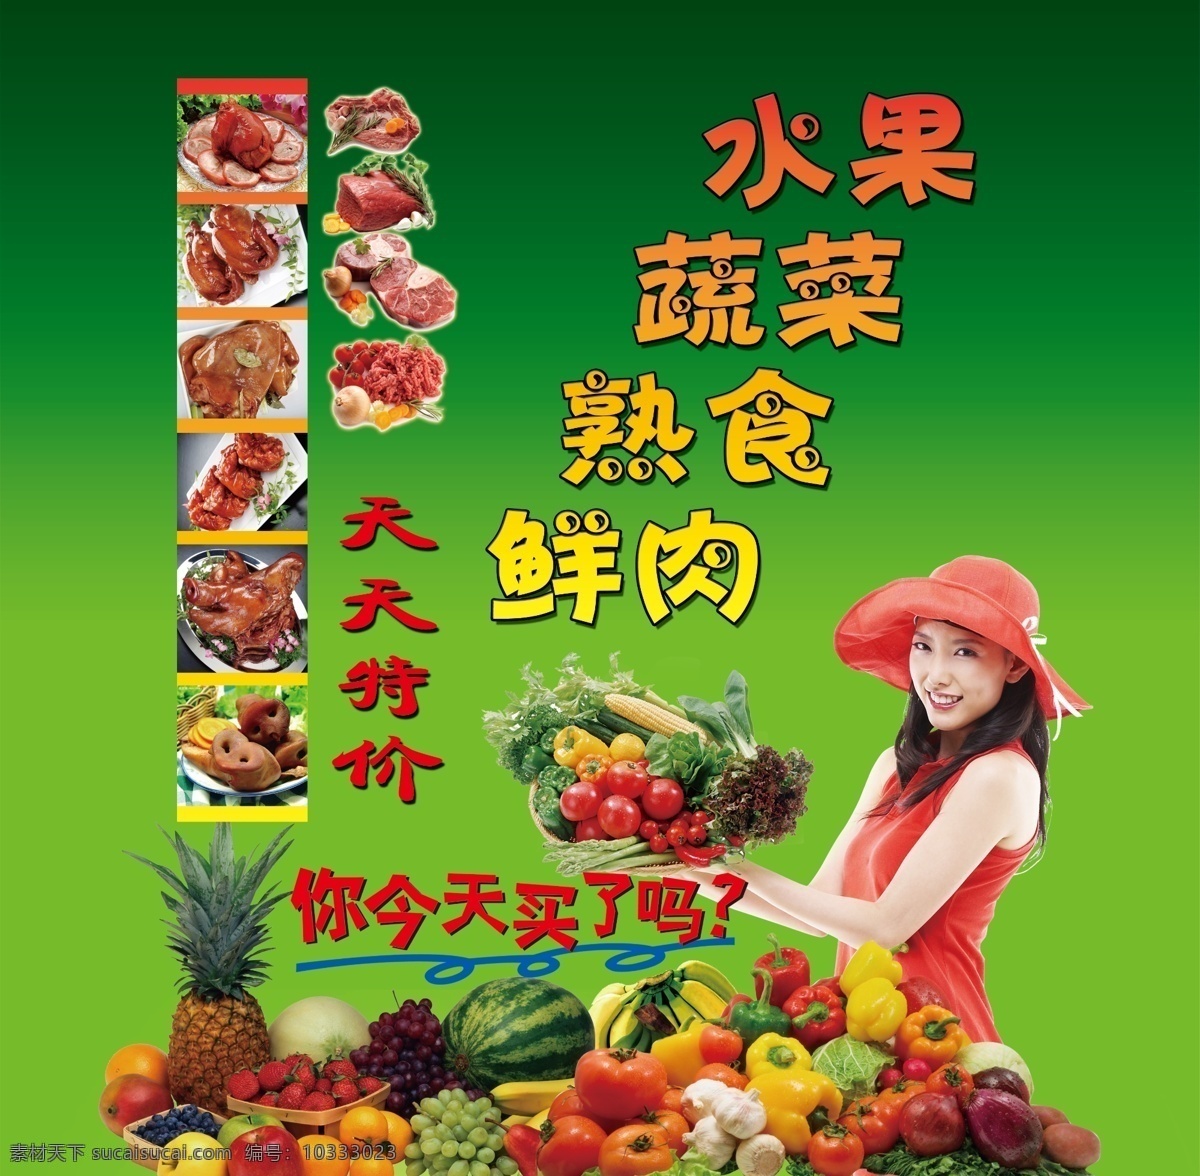 超市 蔬菜水果 宣传 广告设计模板 美女 其他模版 熟食 源文件 风景 生活 旅游餐饮